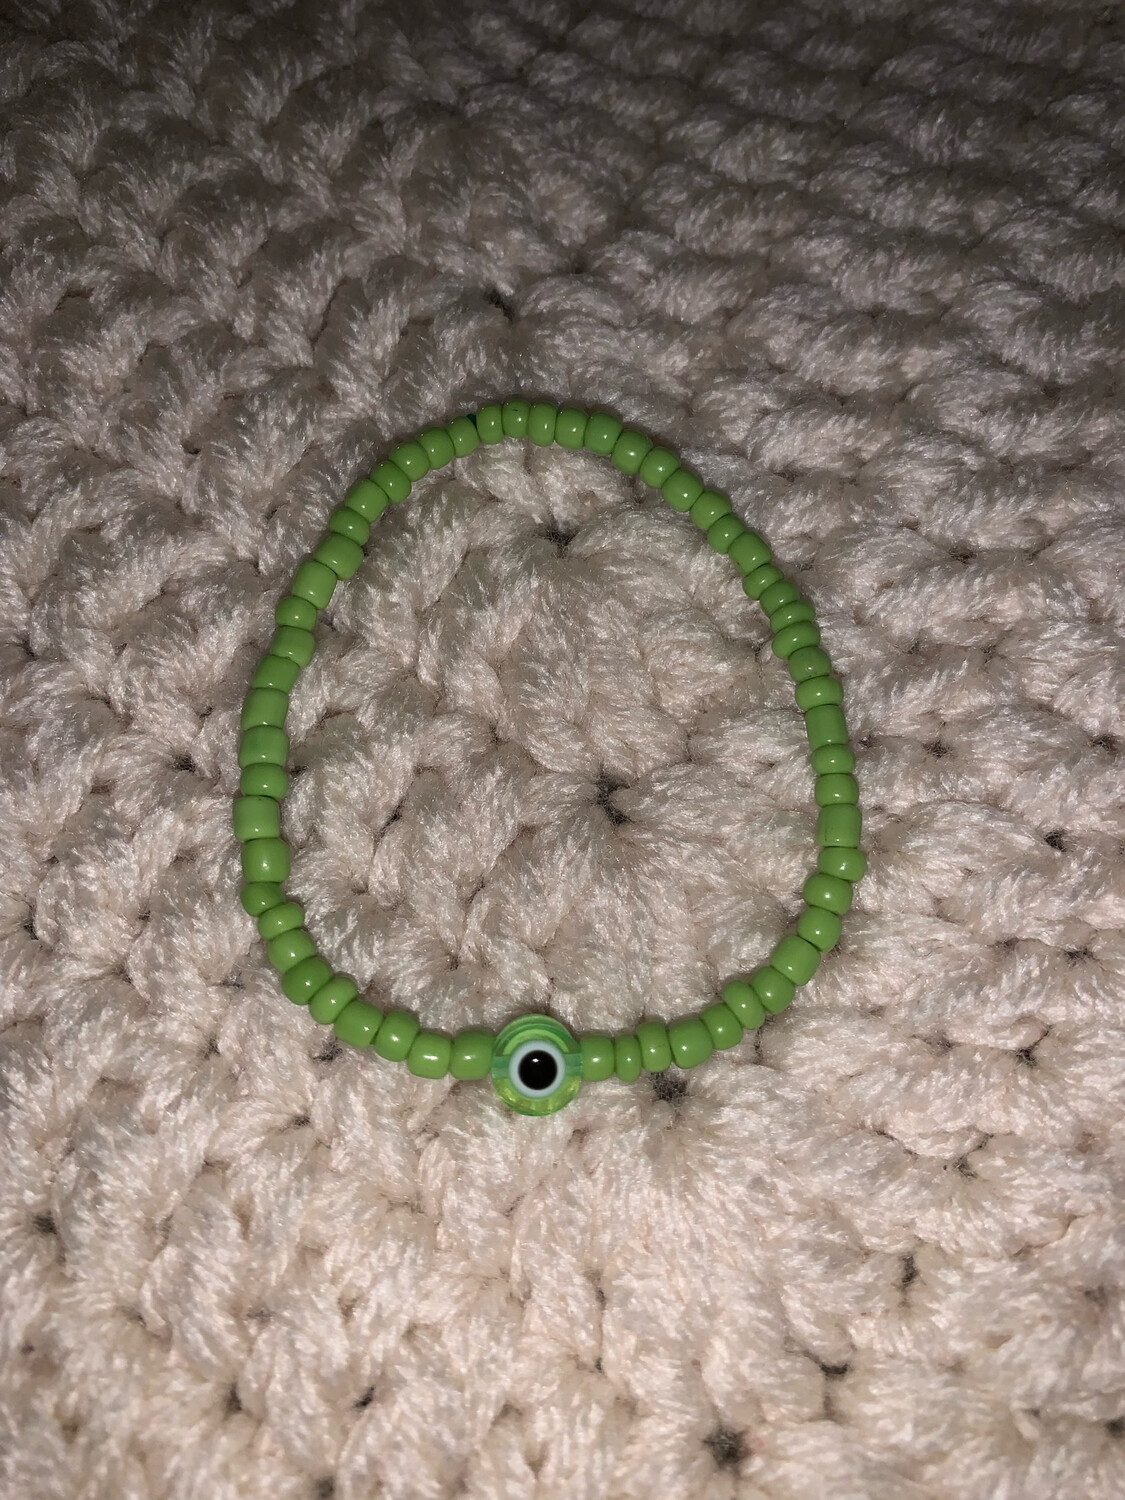 Green beaded bracelet